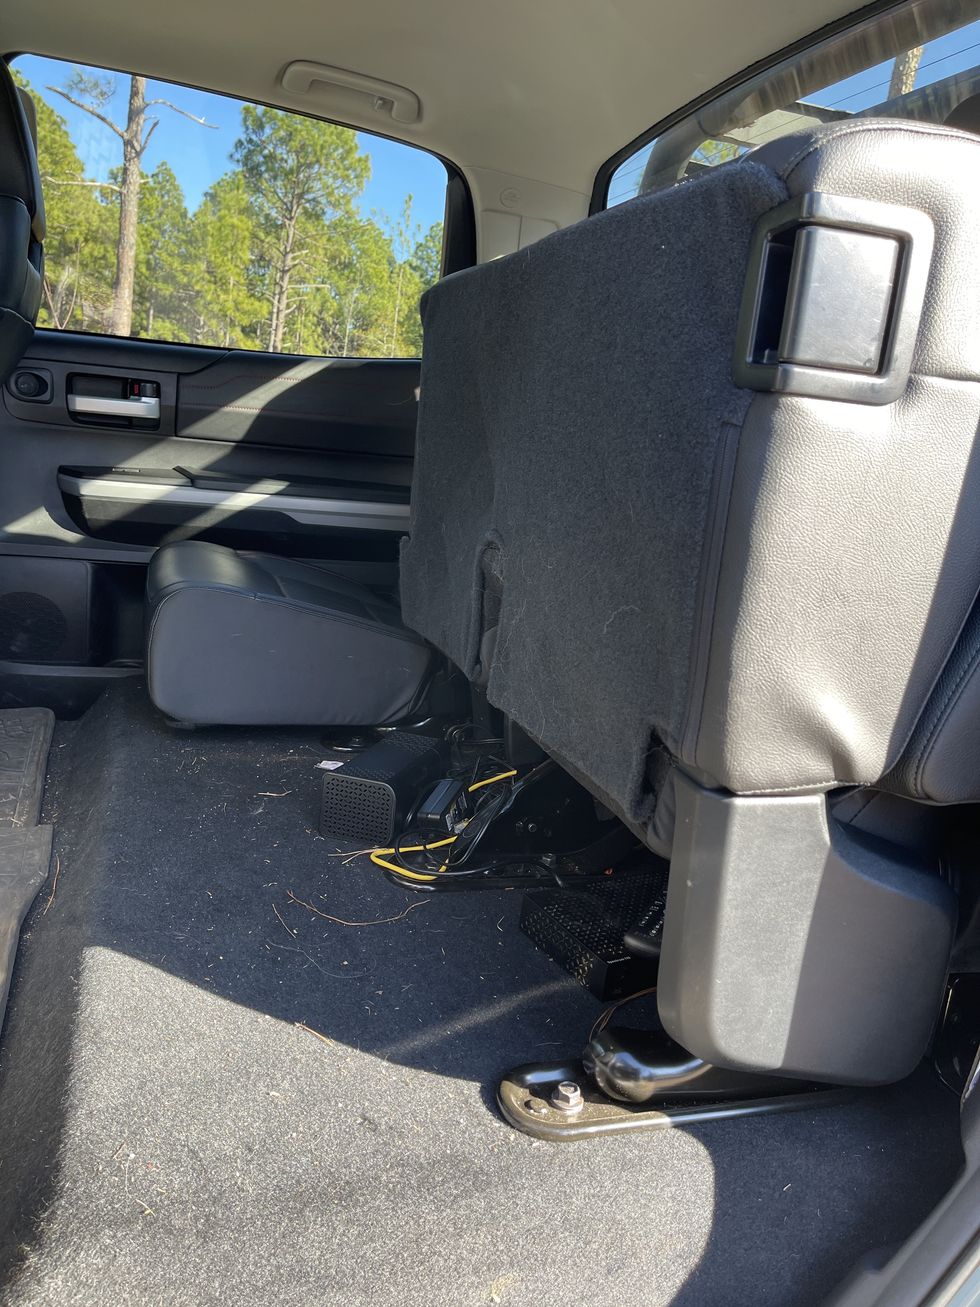 2021 tundra back seat folded